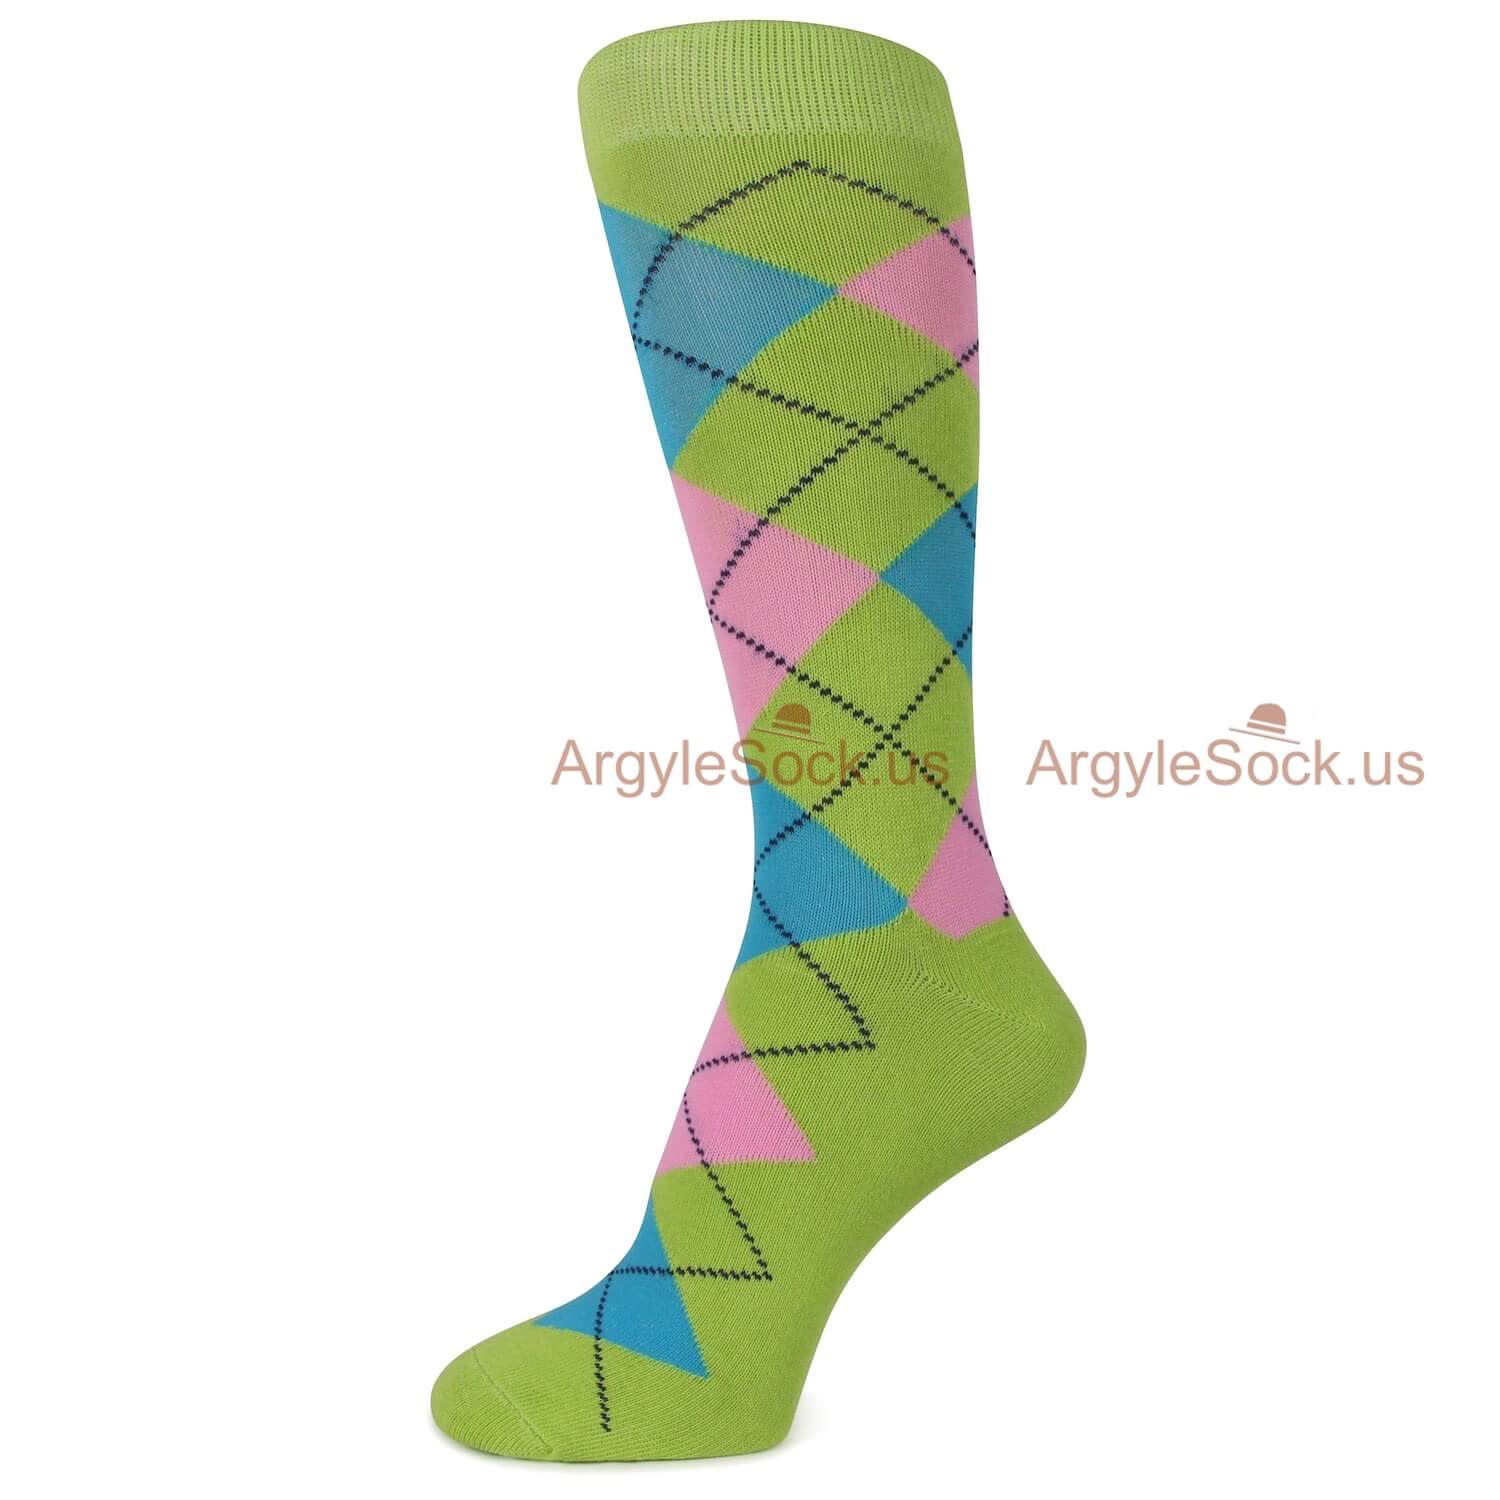 Olive Green Blue and Pink Argyle Mens Socks